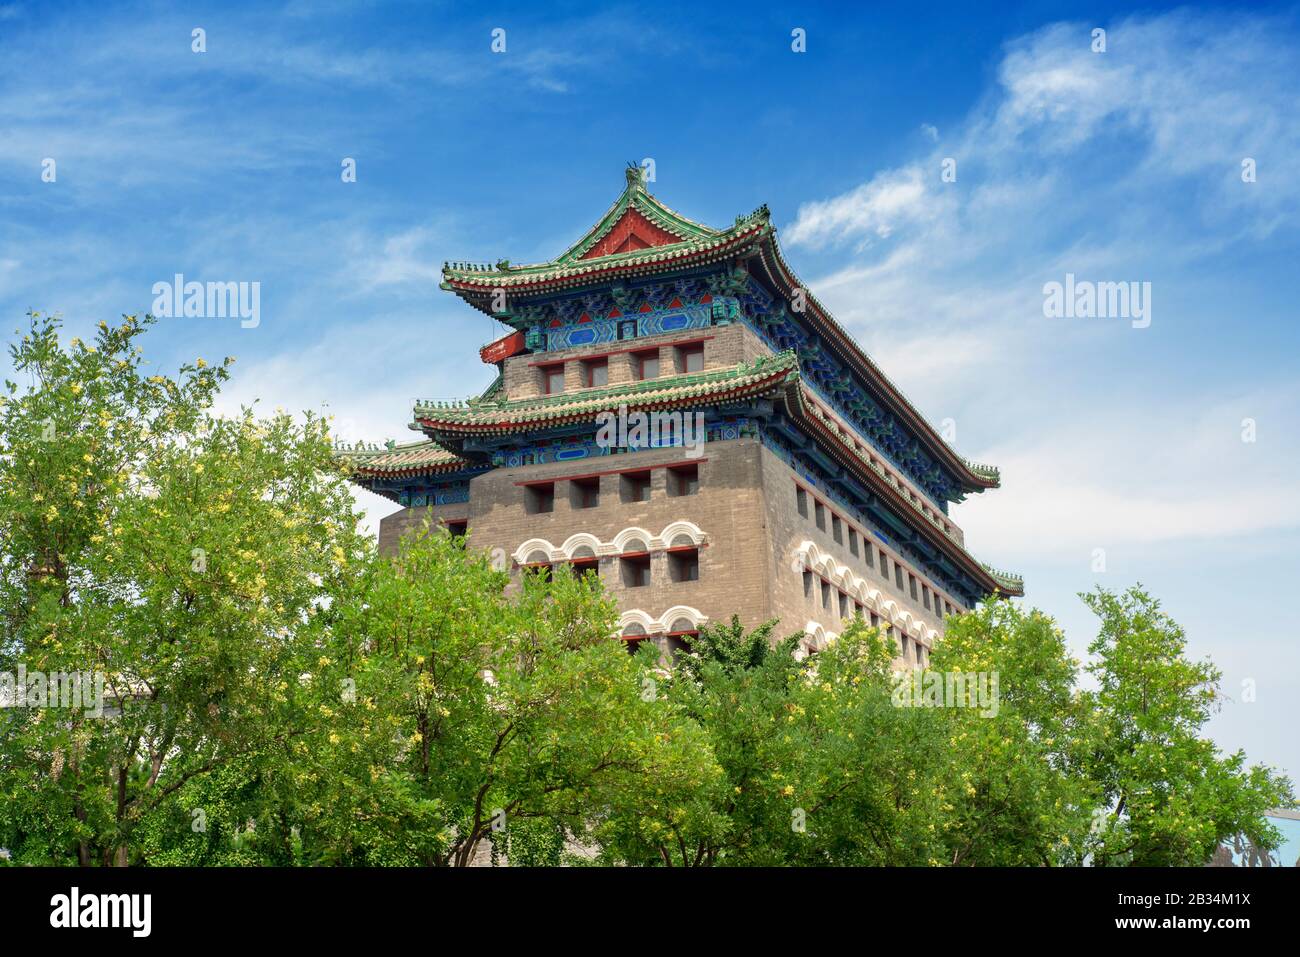 Qianmen tiro con arco torre Beijing China Foto de stock